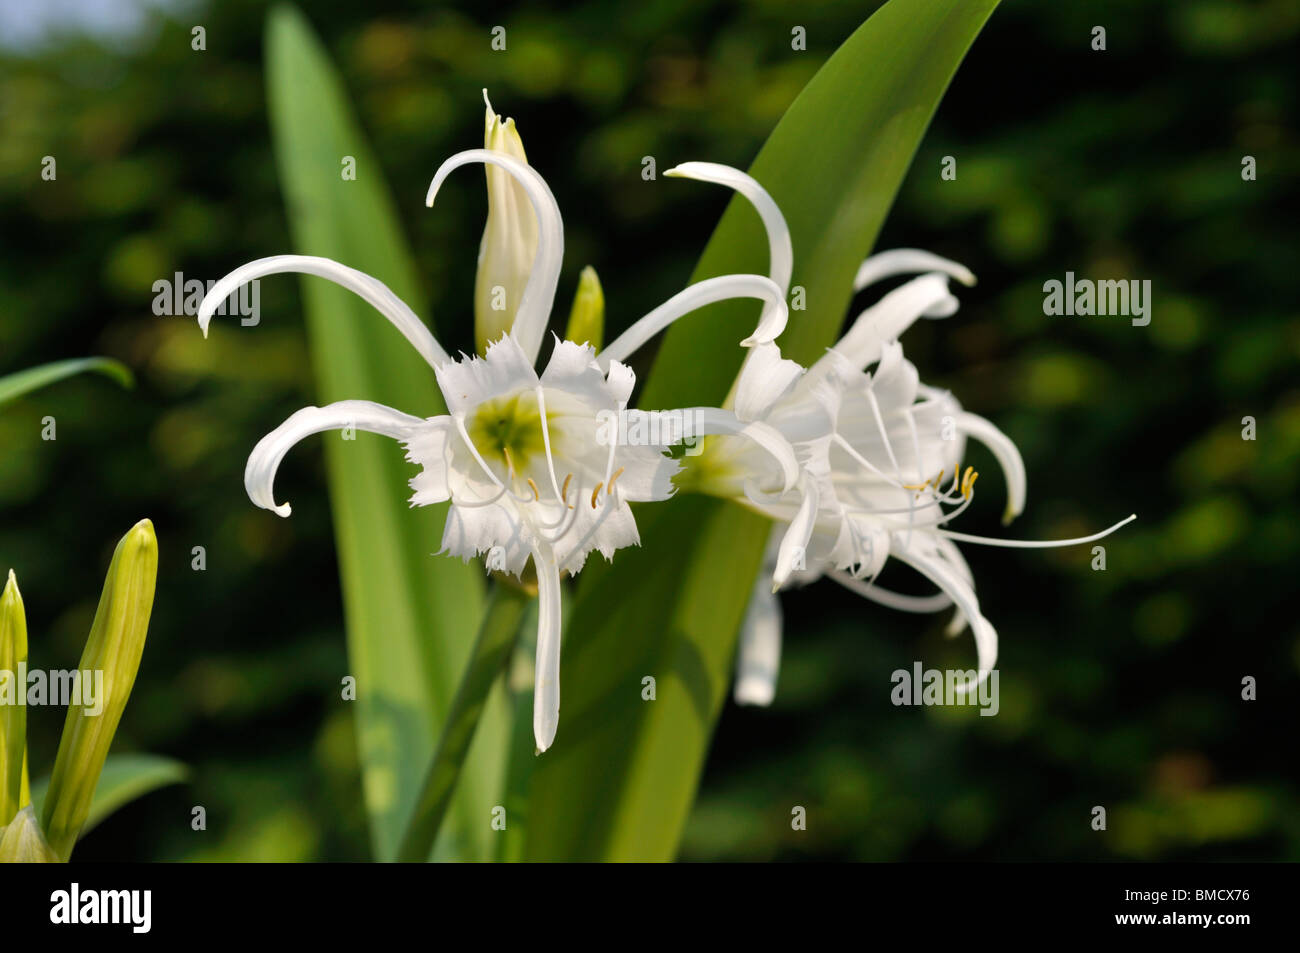 Spider lily (Hymenocallis x festalis) Stock Photo